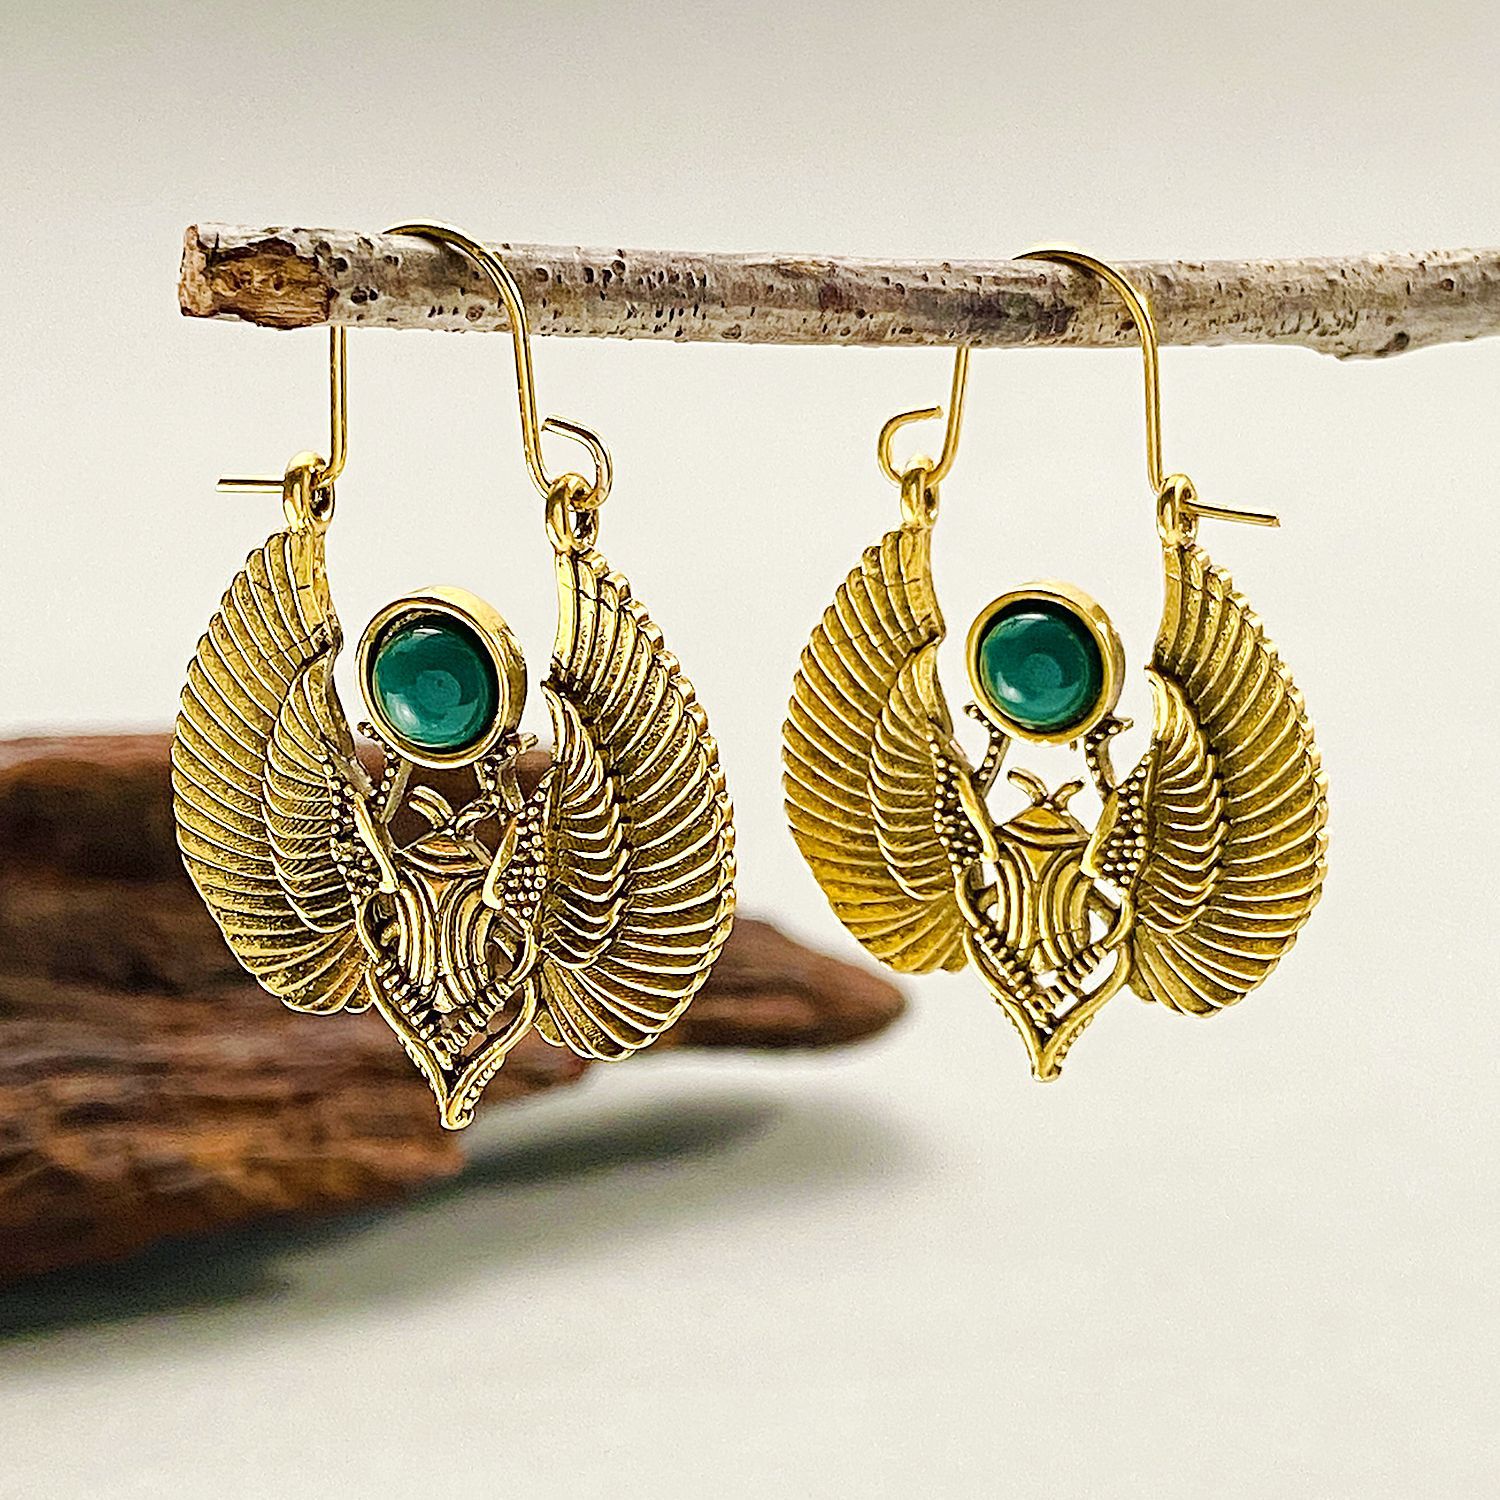 复古埃及灵感设计神圣翅膀飞蛾大耳环吉普赛部落妇女耳环派对礼物